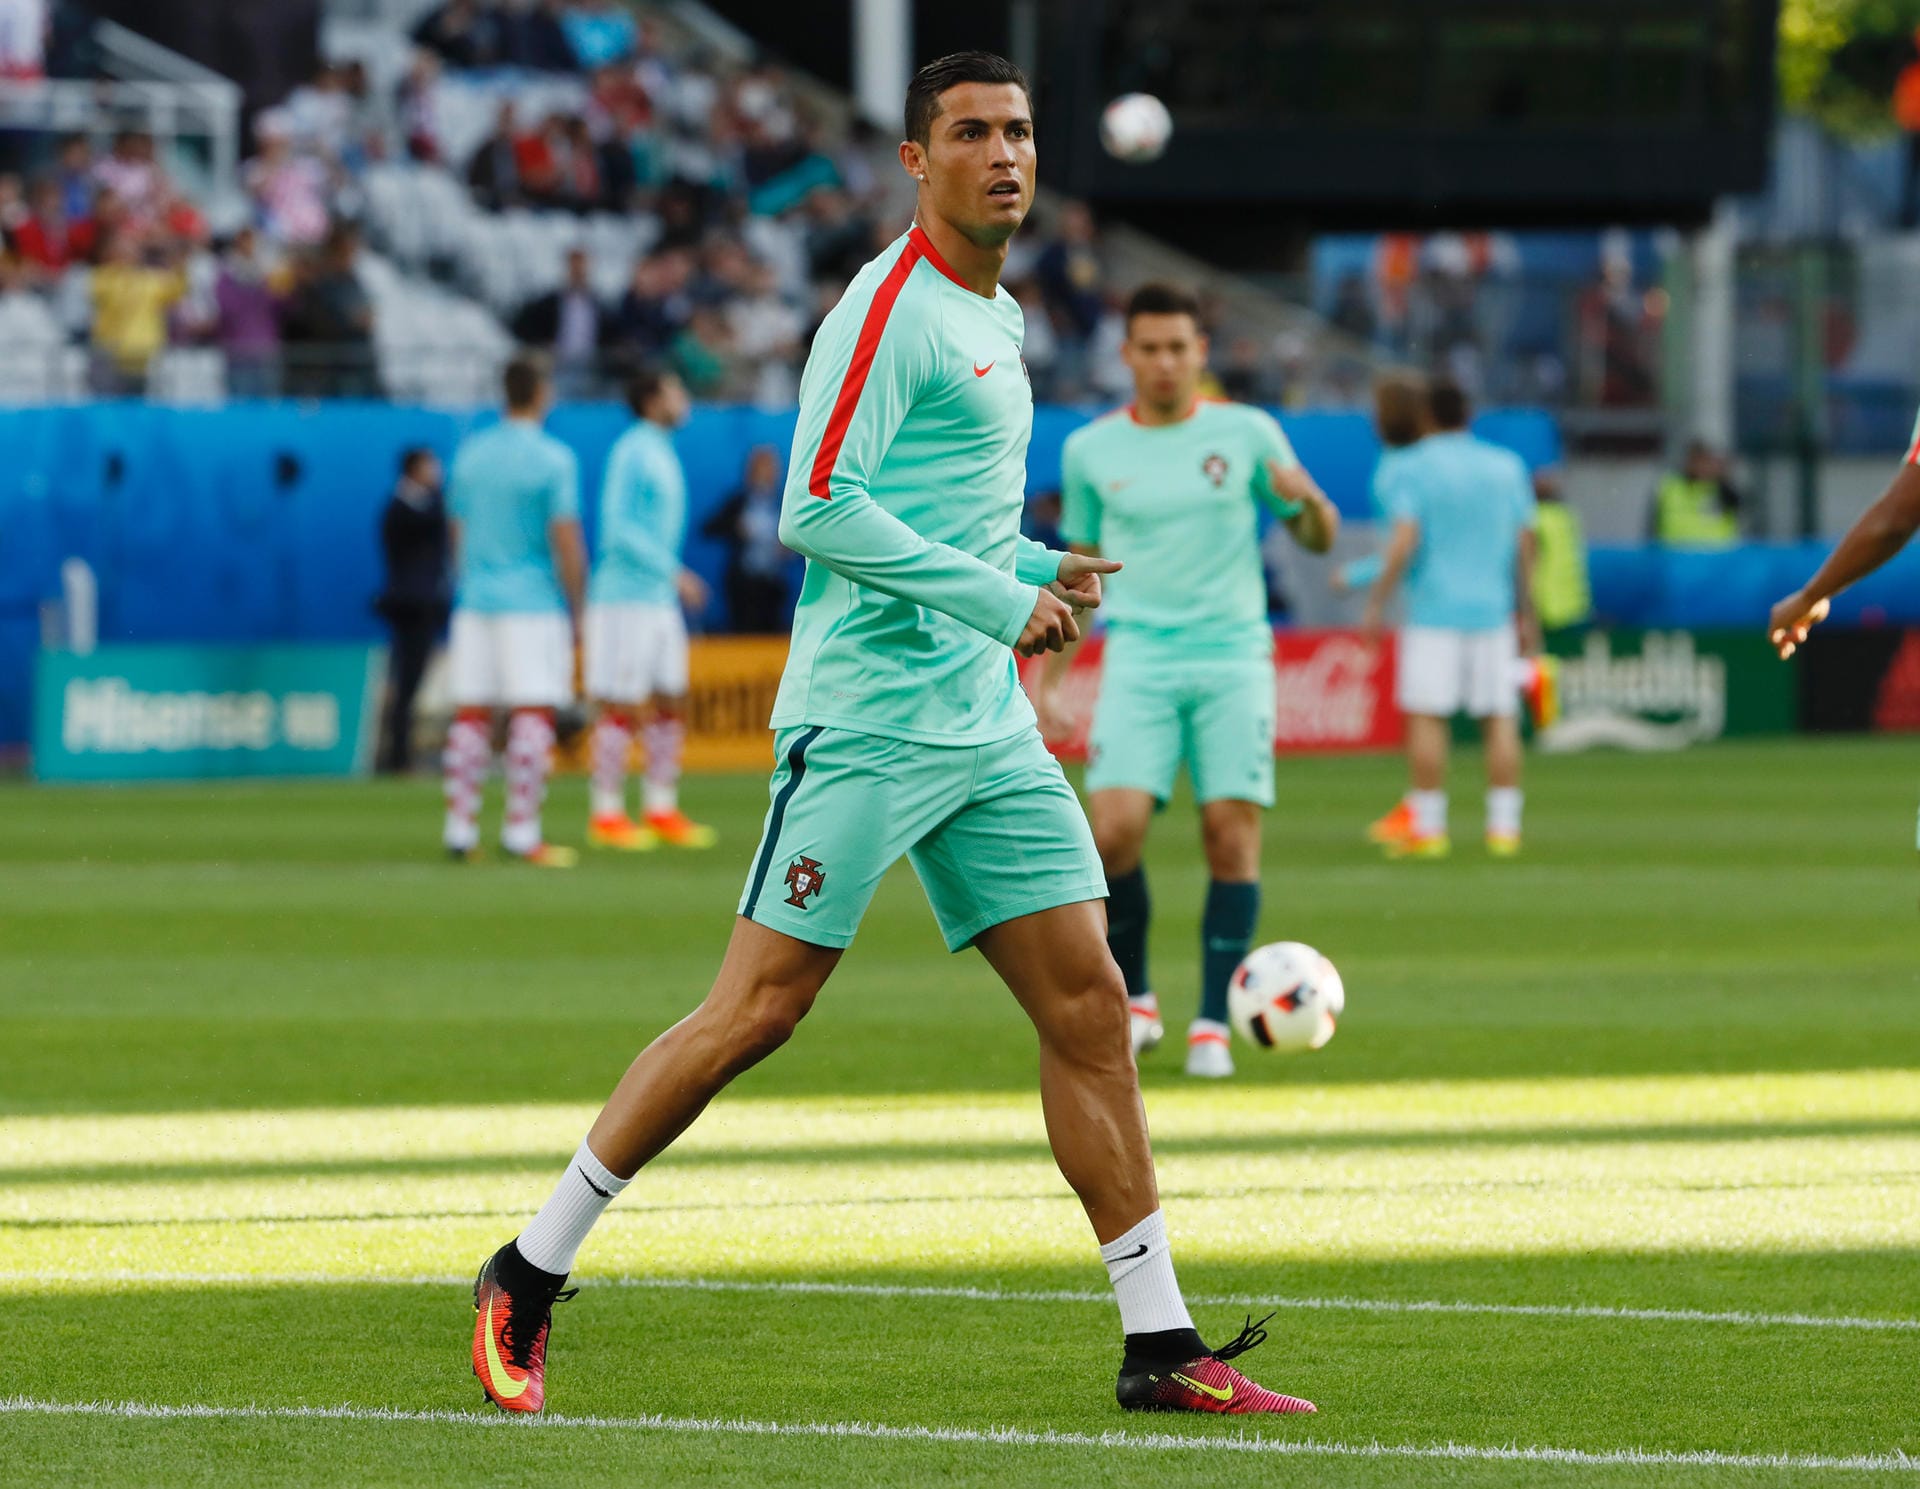 Natürlich wird auch bei dieser Partie wieder Portugals Superstar Cristiano Ronaldo im Fokus stehen - ohne seine beiden Treffer und eine Torvorlage beim 3:3 gegen Ungarn wären die Iberer längst ausgeschieden.